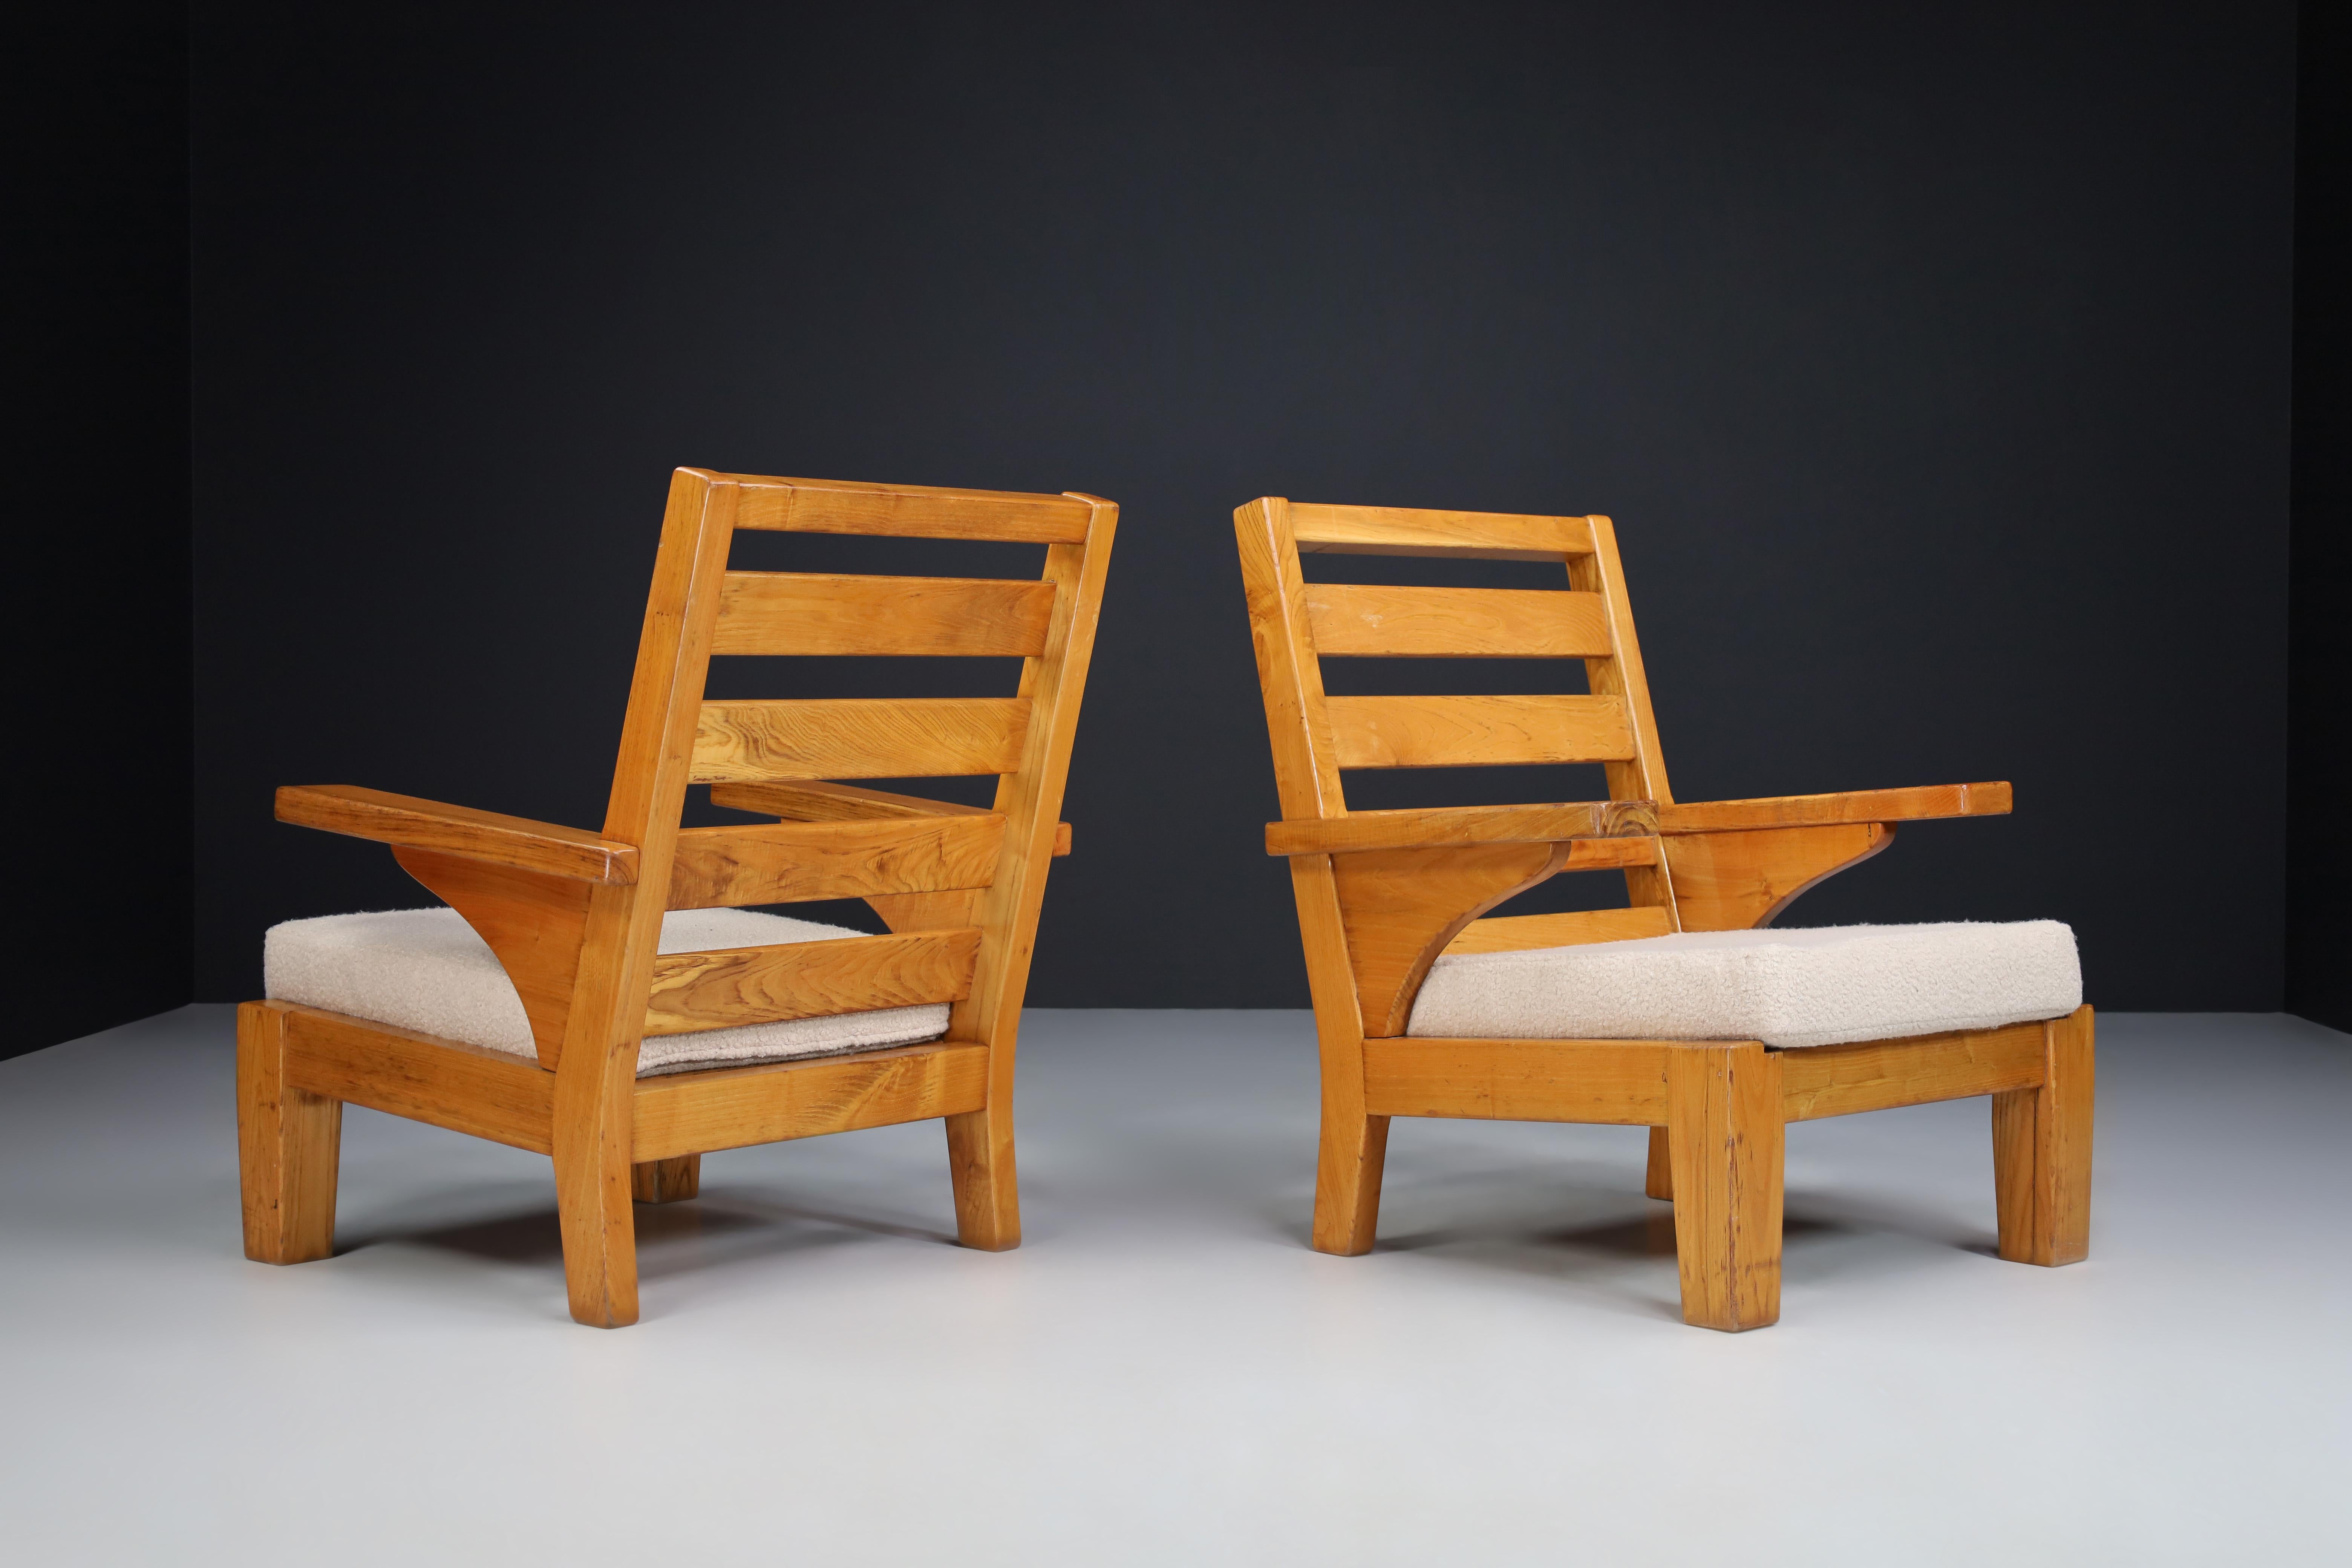 Sessel aus patiniertem Kiefernholz und Teddy-Stoff, Spanien 1960er Jahre

Robustes Paar von zwei Loungesesseln aus Kiefernholz und neu gepolstertem Teddy-Stoff, entworfen und hergestellt in Spanien in den 1960er Jahren. Diese beiden Sessel sind ein